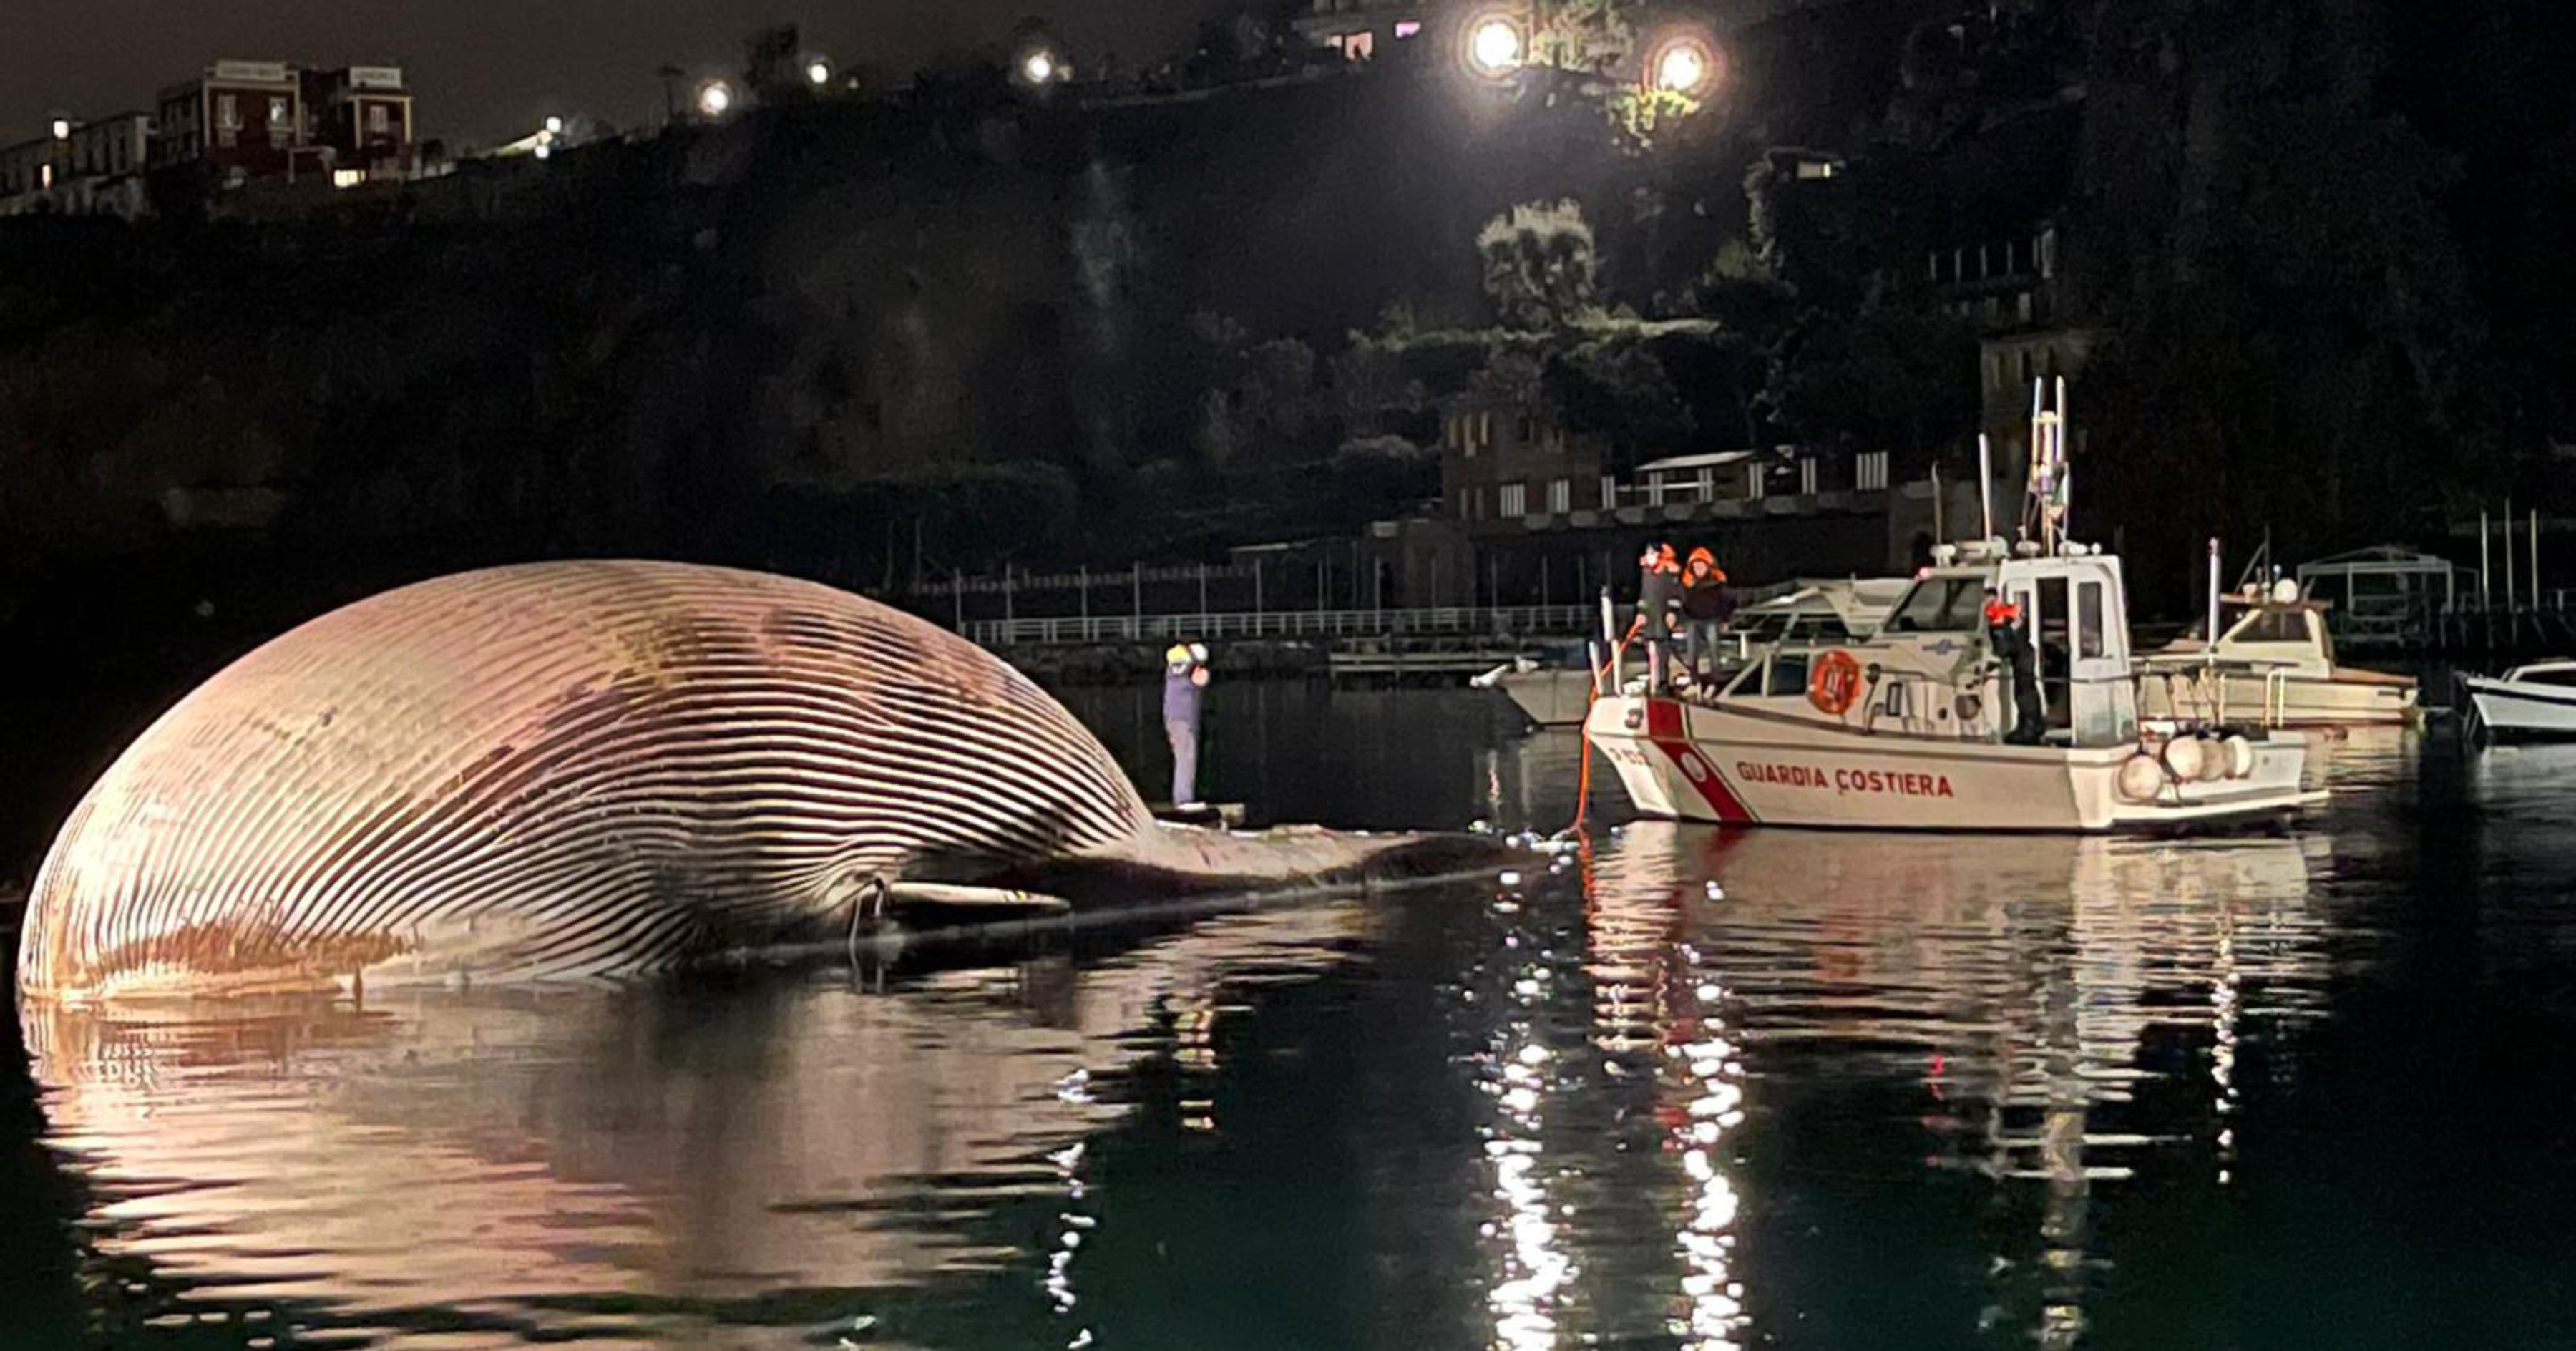 Óriási bálnatetemet hoztak partra az olasz parti őrség tagjai